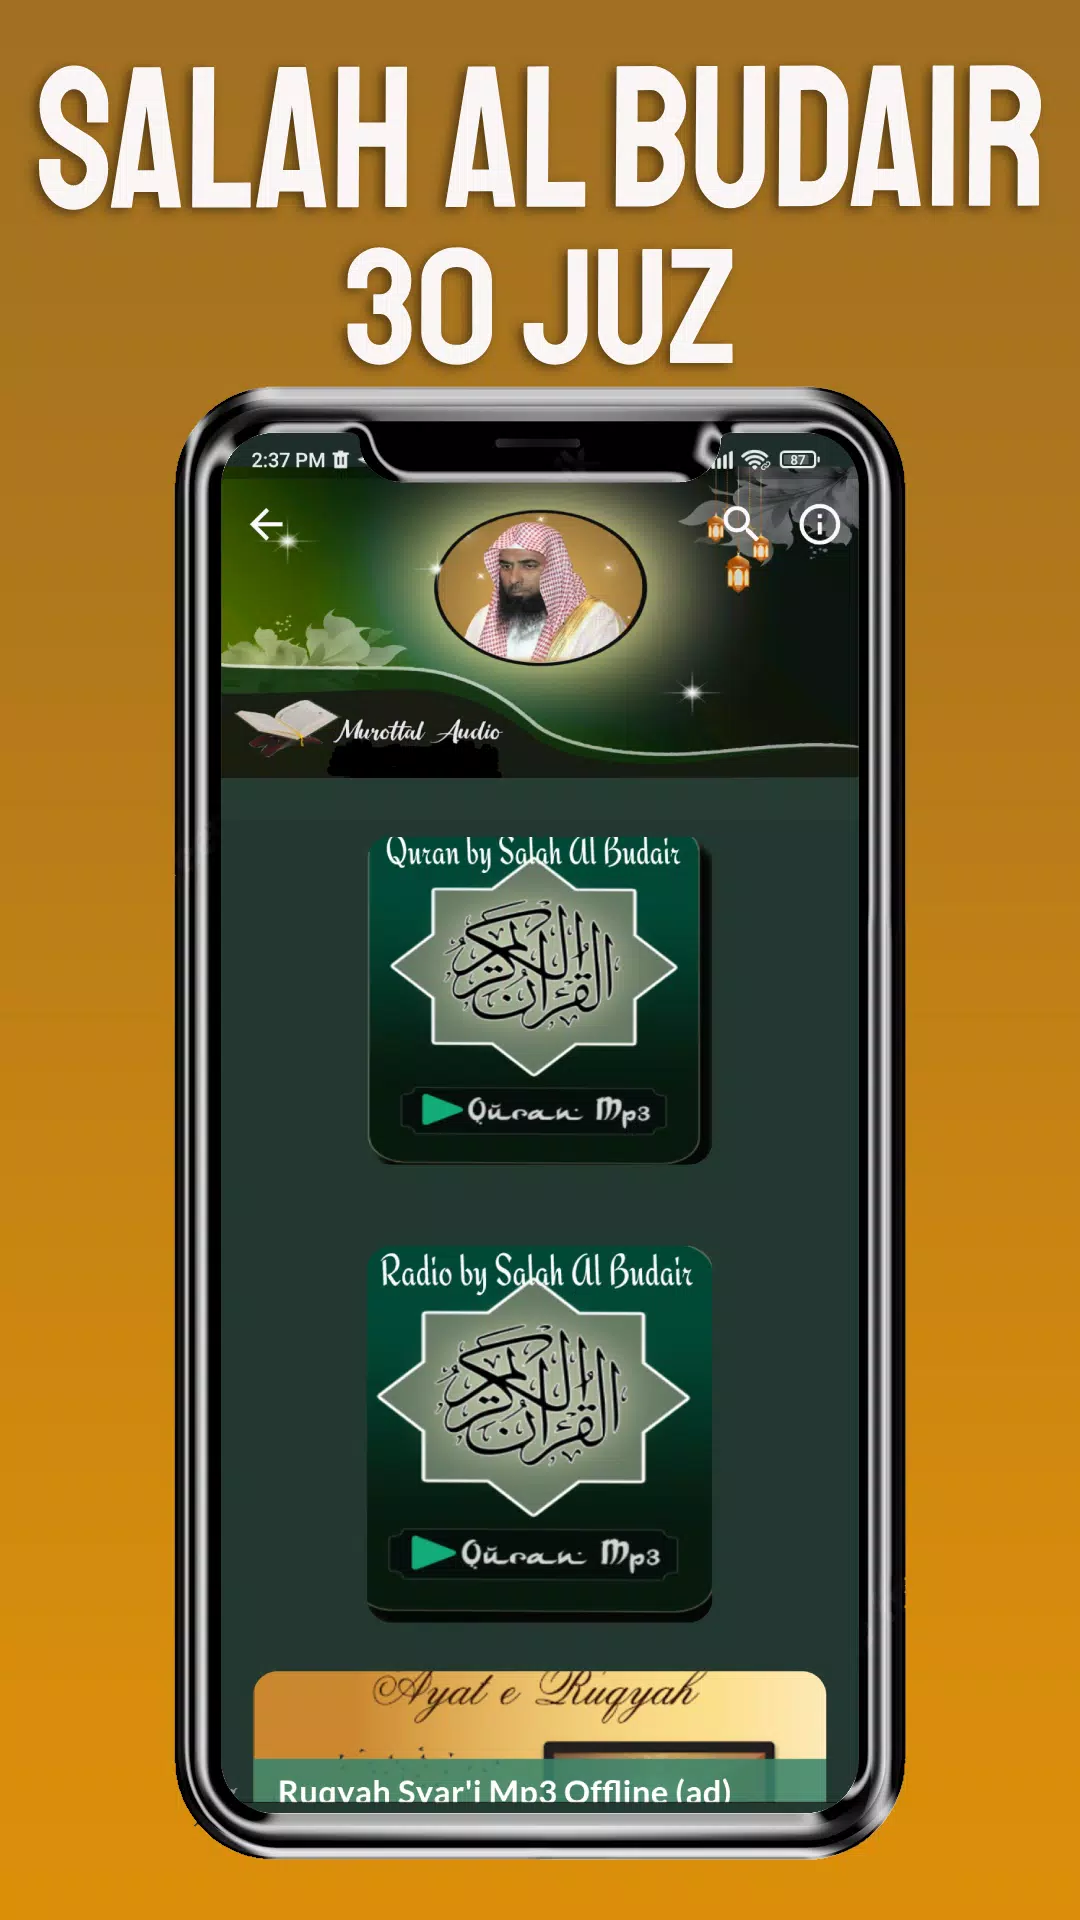 Quran by Salah Al Budair Mp3 APK for Android Download